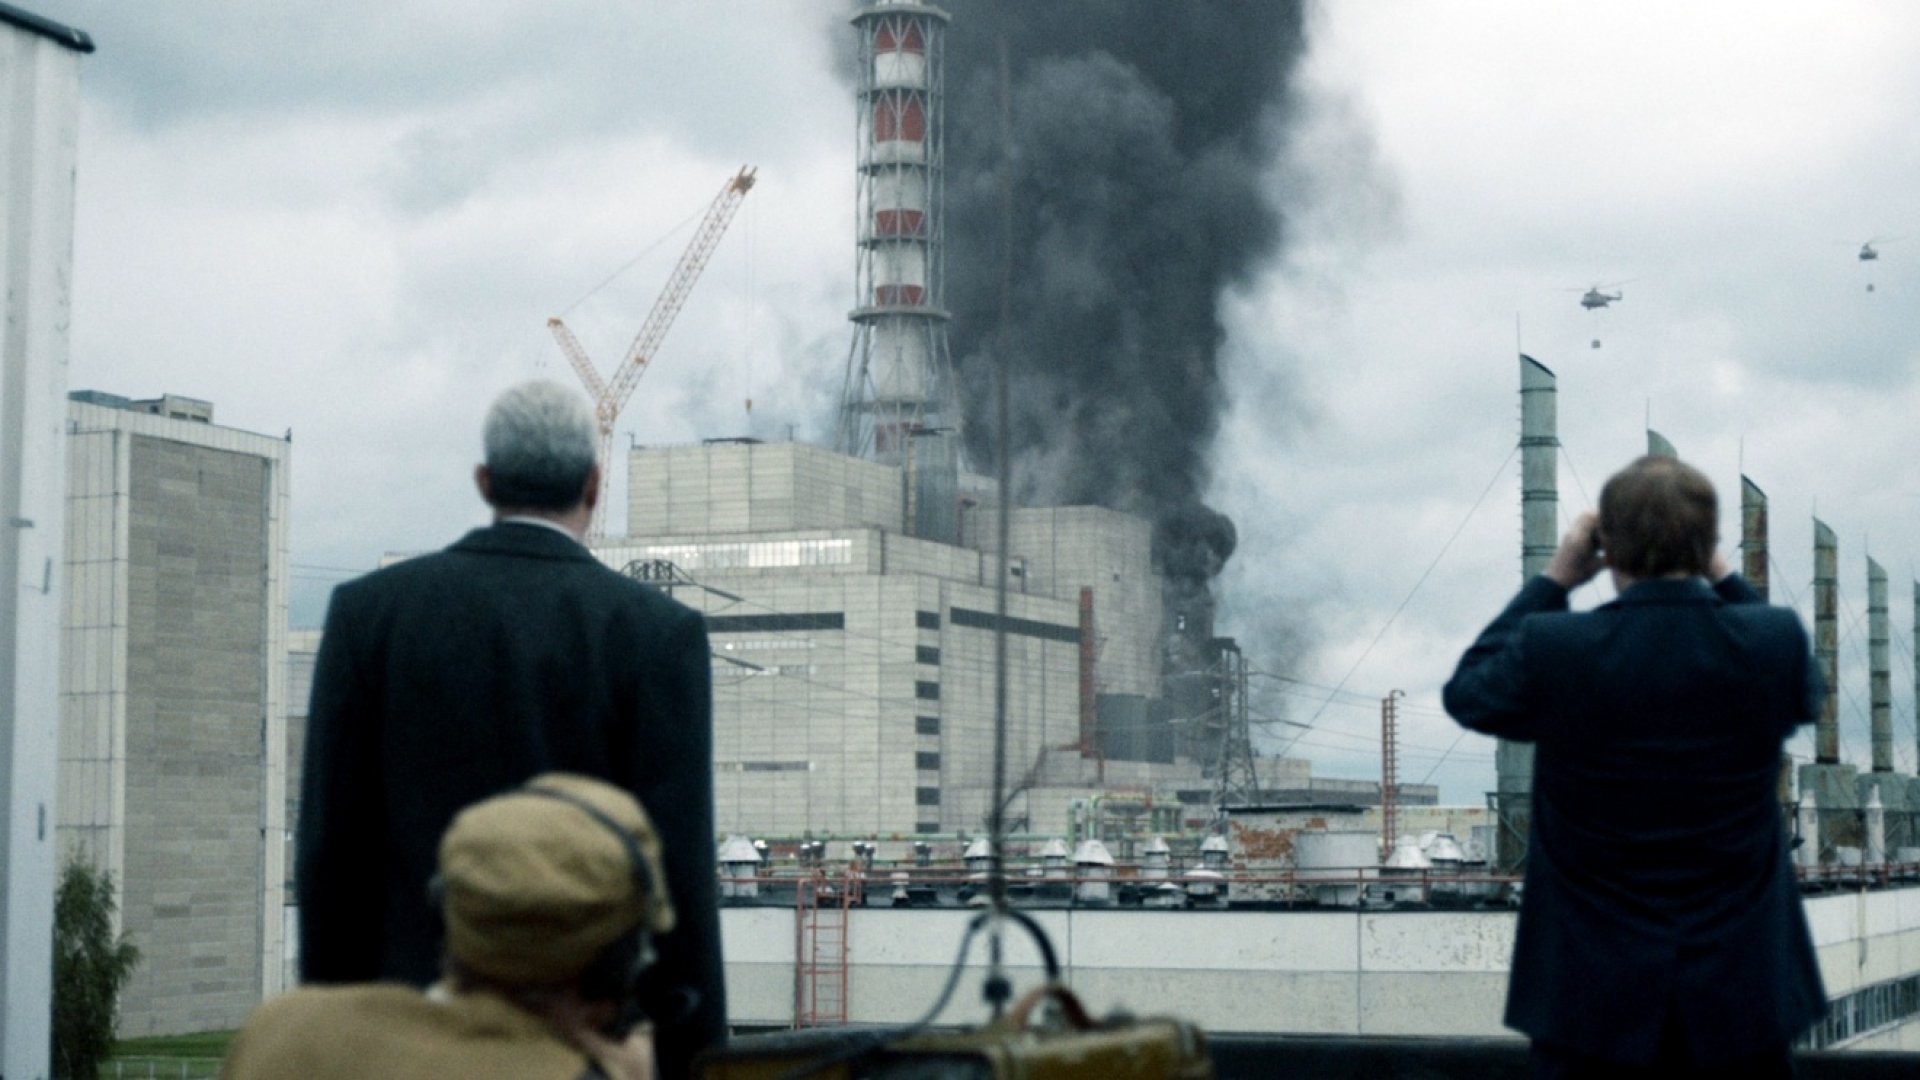  Украина снимет свой фильм о Чернобыле. Его выдвинут на "Оскар" - фото 1